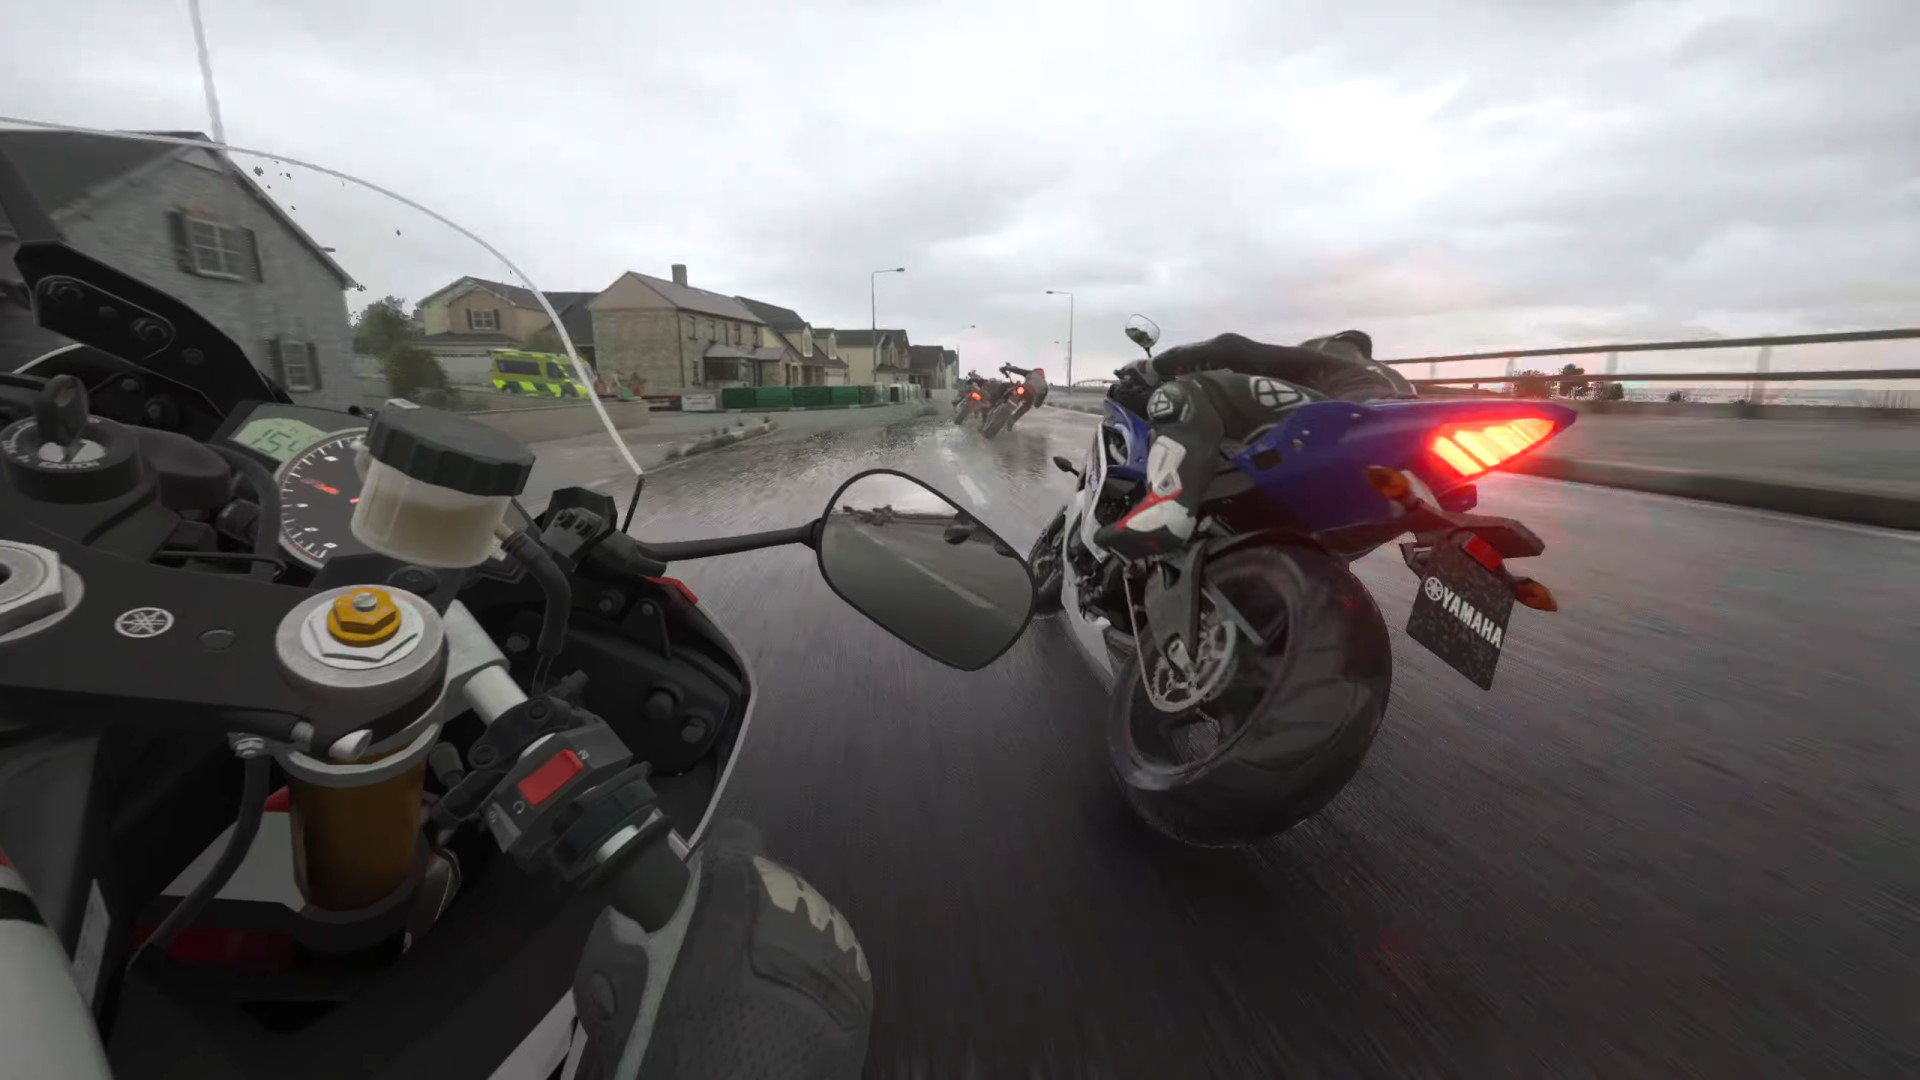 PlayStation Motorcycle Racing Games